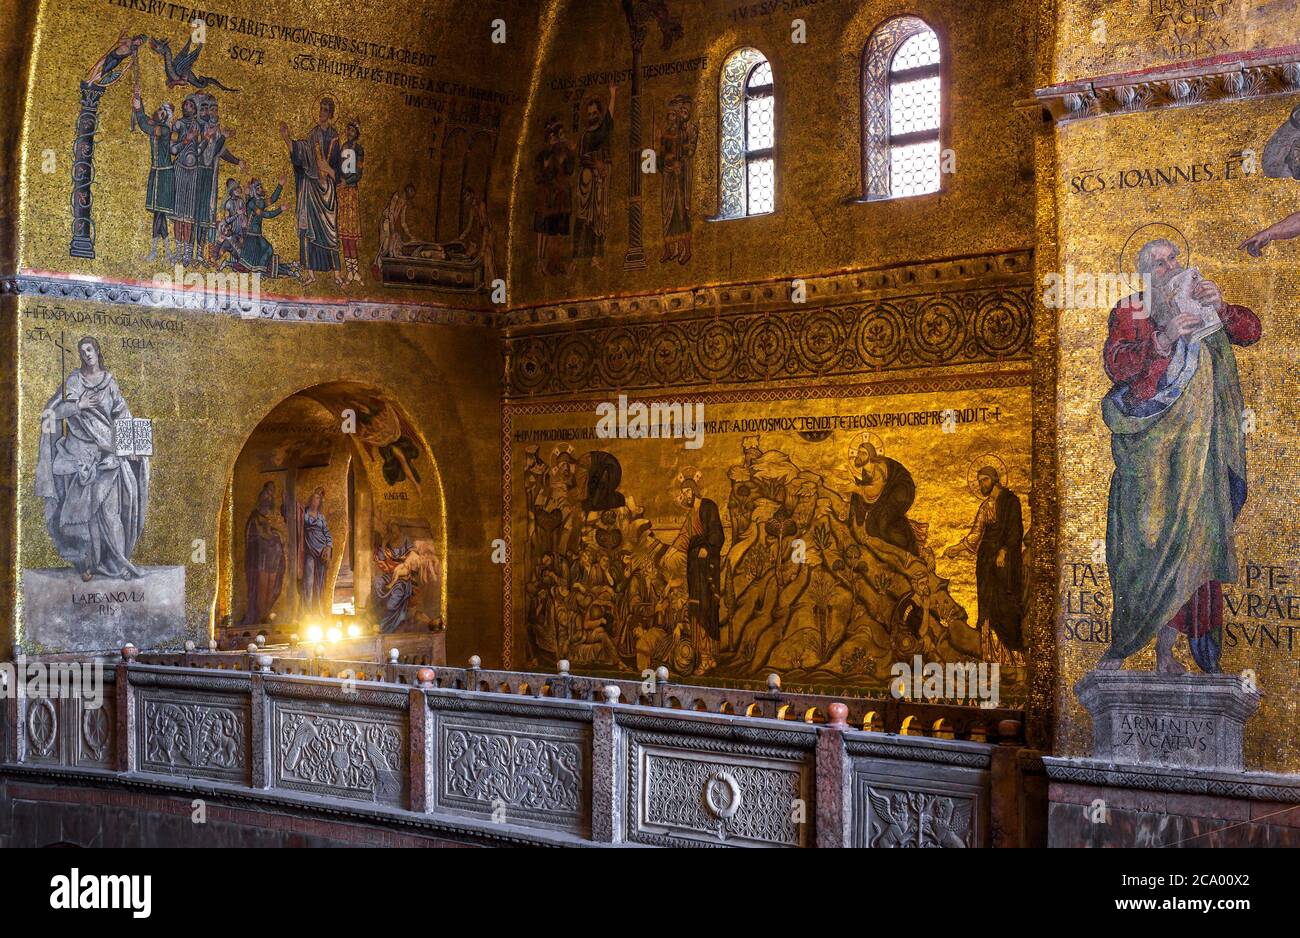 Venezia, Italia - 21 maggio 2017: Mosaico murale d'oro all'interno`s della Basilica di San Marco o San Marco, è il punto di riferimento di Venezia. Interno della famosa`s di San Marco Foto Stock